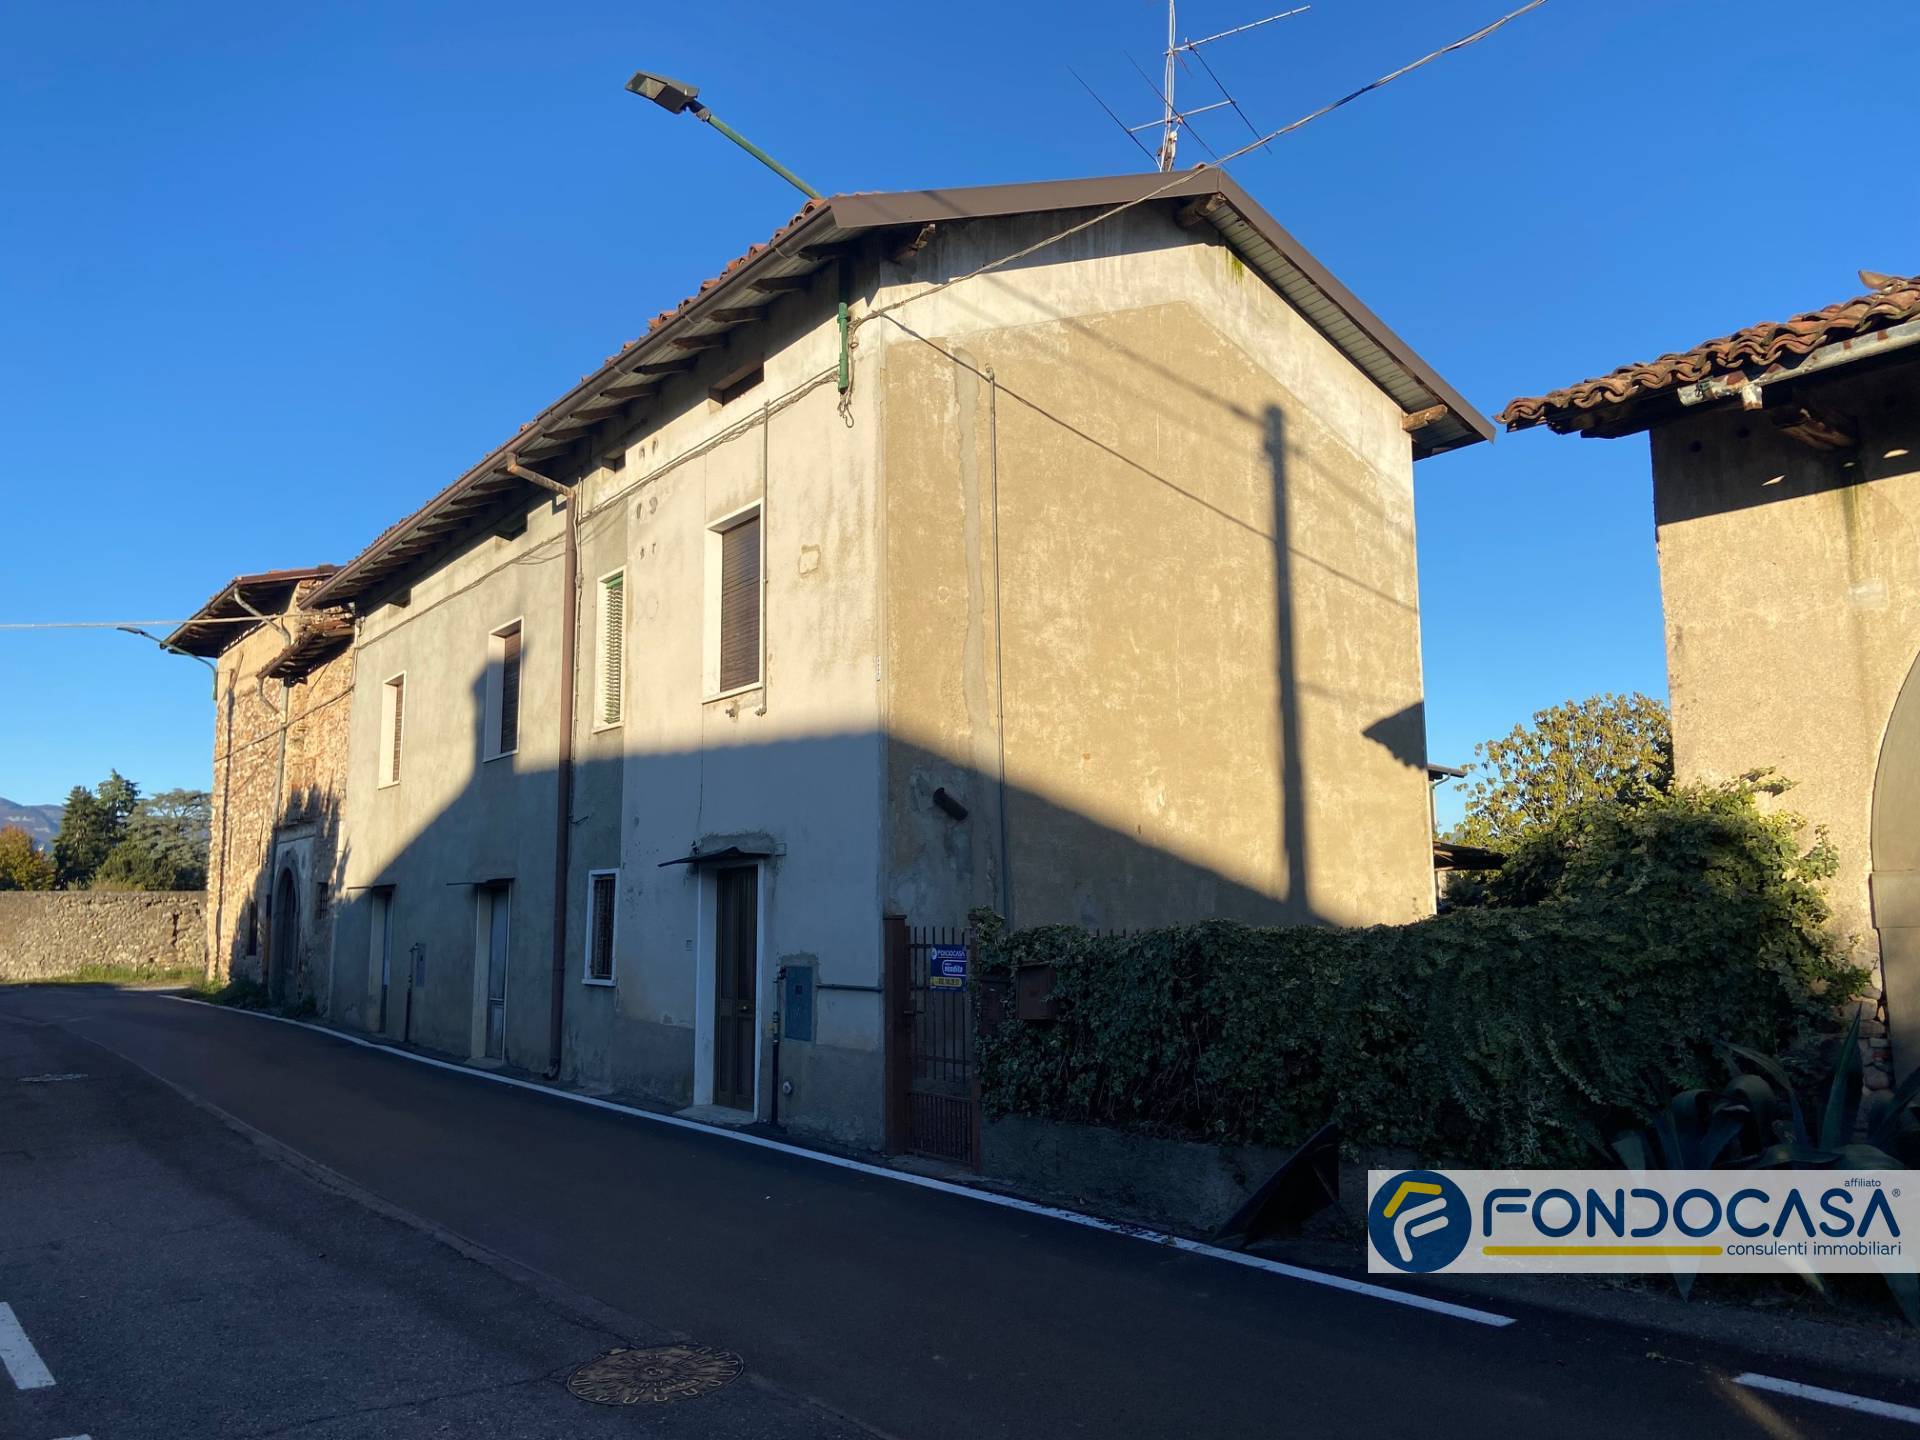 Rustico / Casale in vendita a Palazzolo sull'Oglio, 8 locali, prezzo € 38.000 | PortaleAgenzieImmobiliari.it